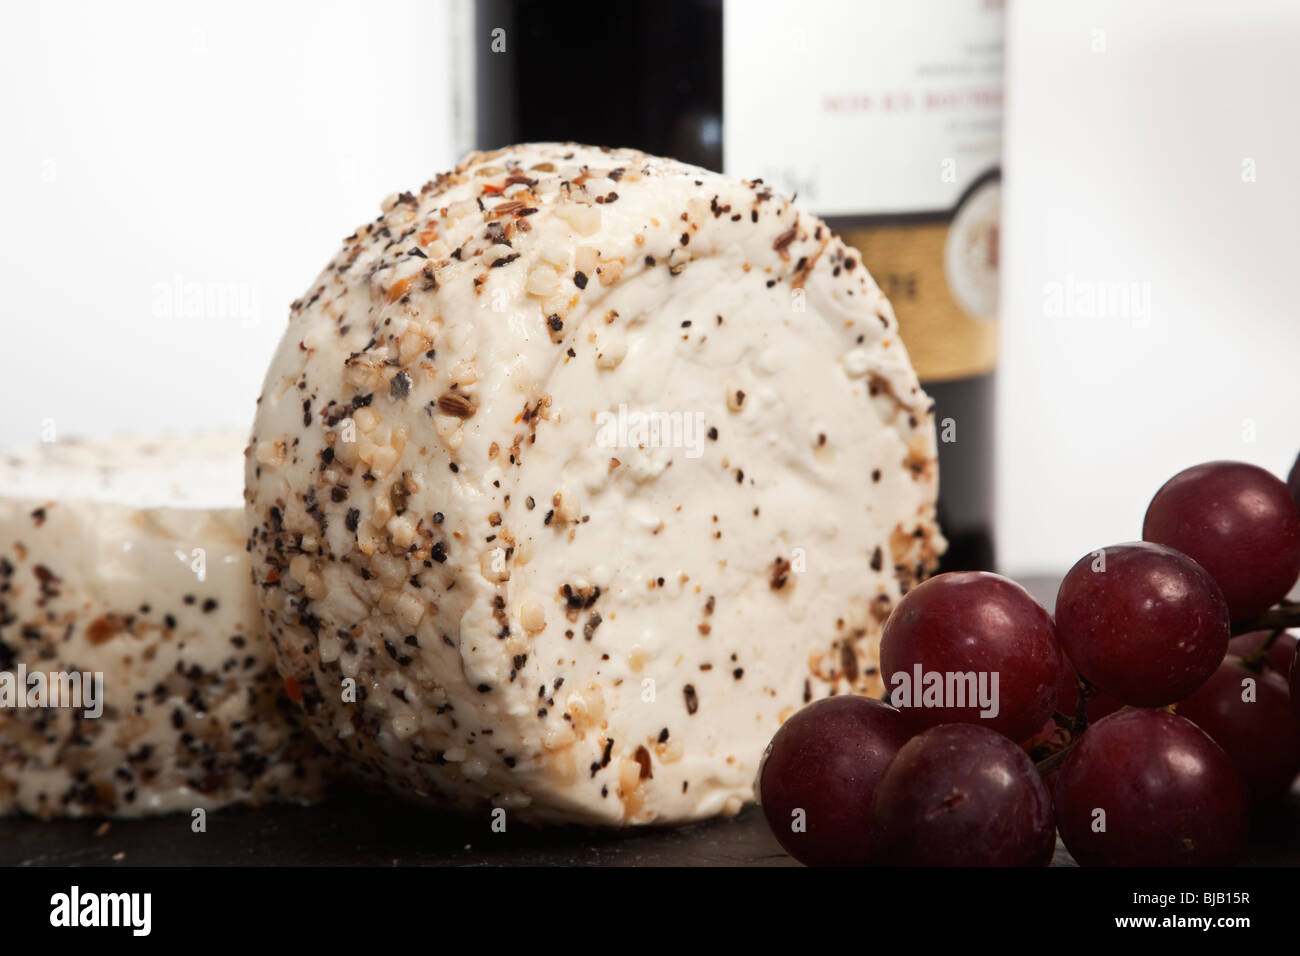 Ancora la vita di vino rosso, di un cuneo di aglio e pepe formaggio a pasta morbida, uva e una bottiglia di vino rosso con un semplice sfondo bianco Foto Stock